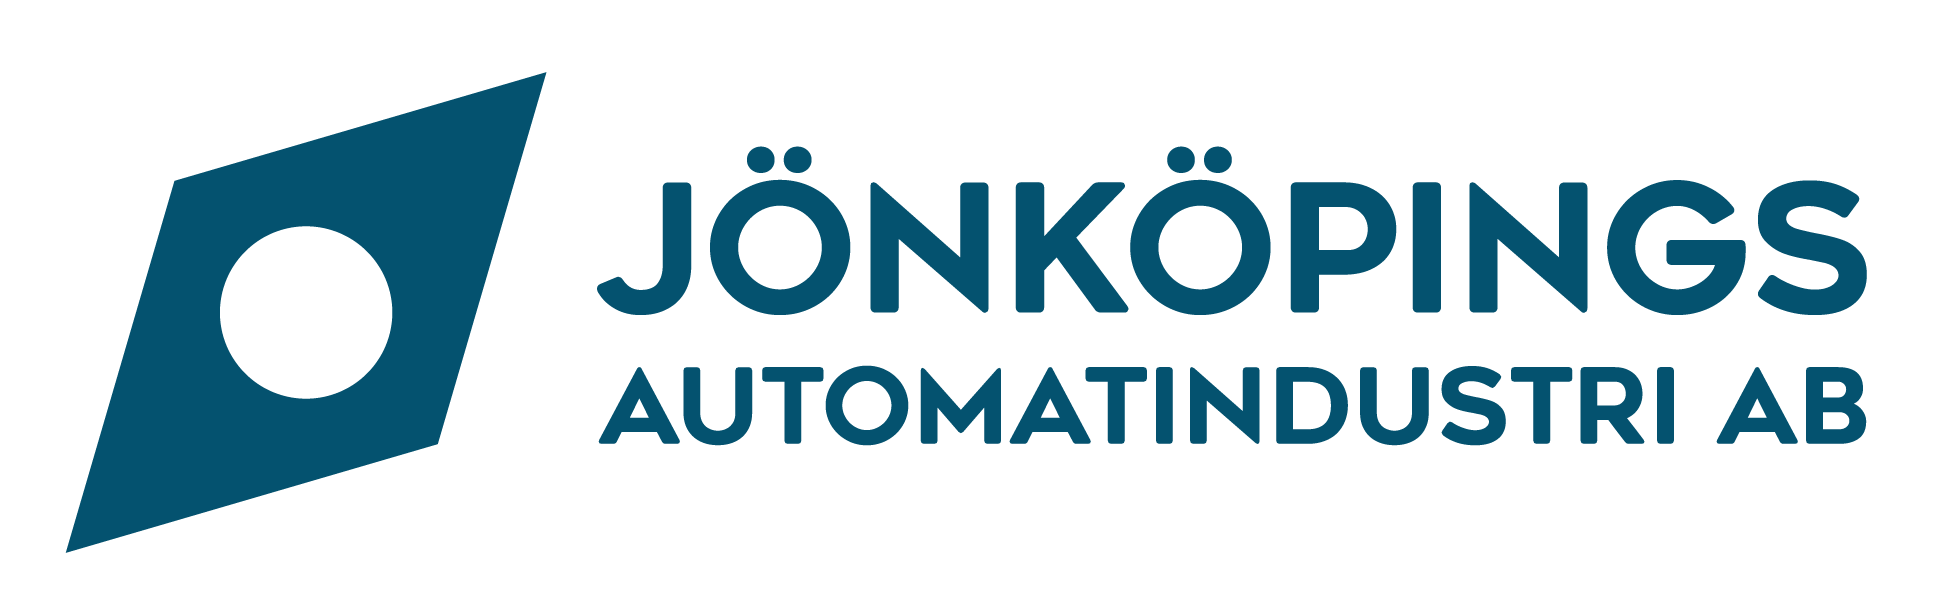 Jönköpings Automatindustri AB